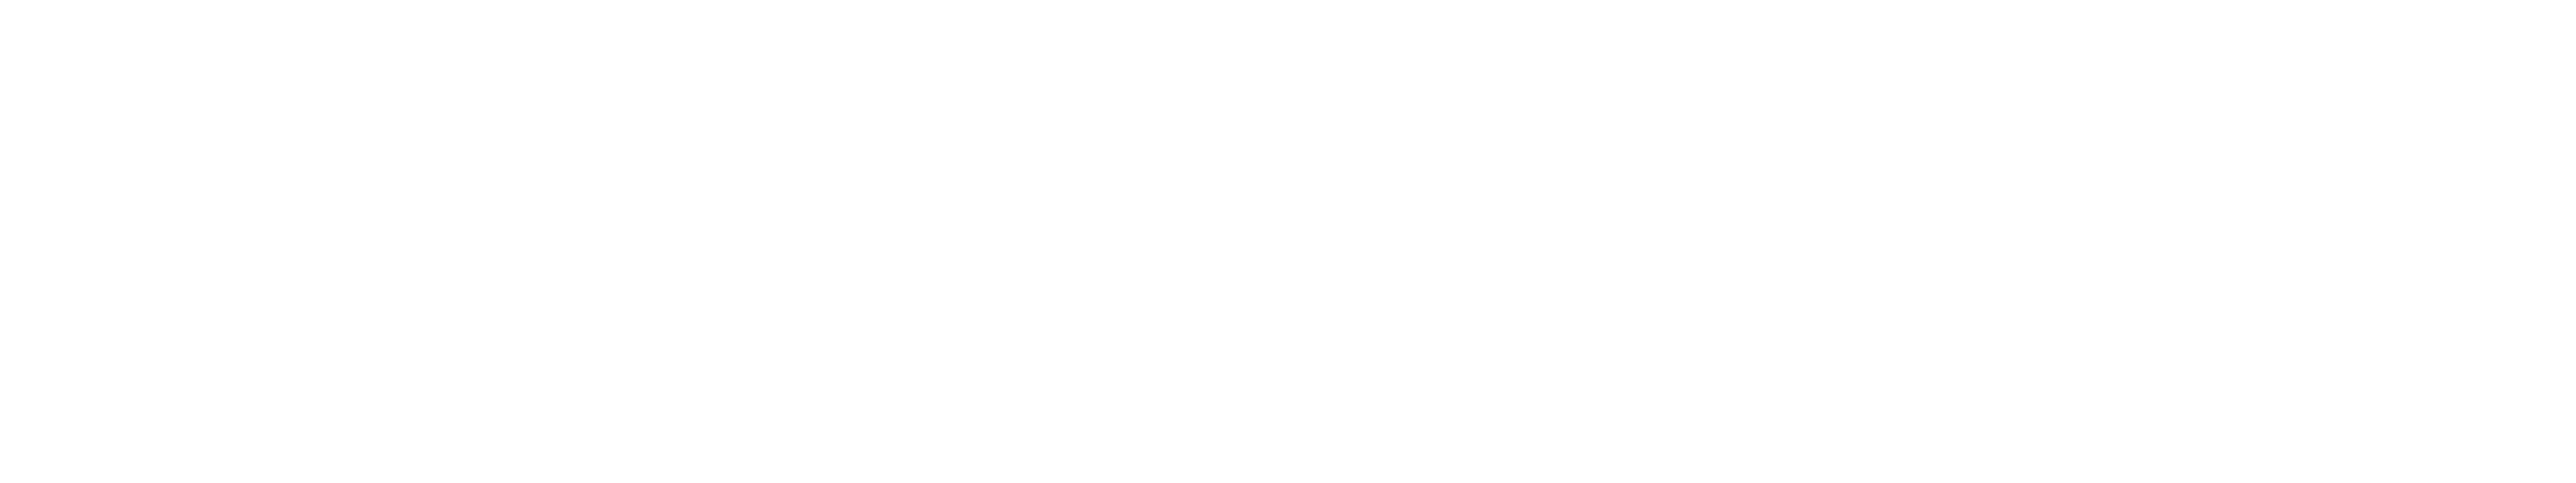 AngelHack logo_white